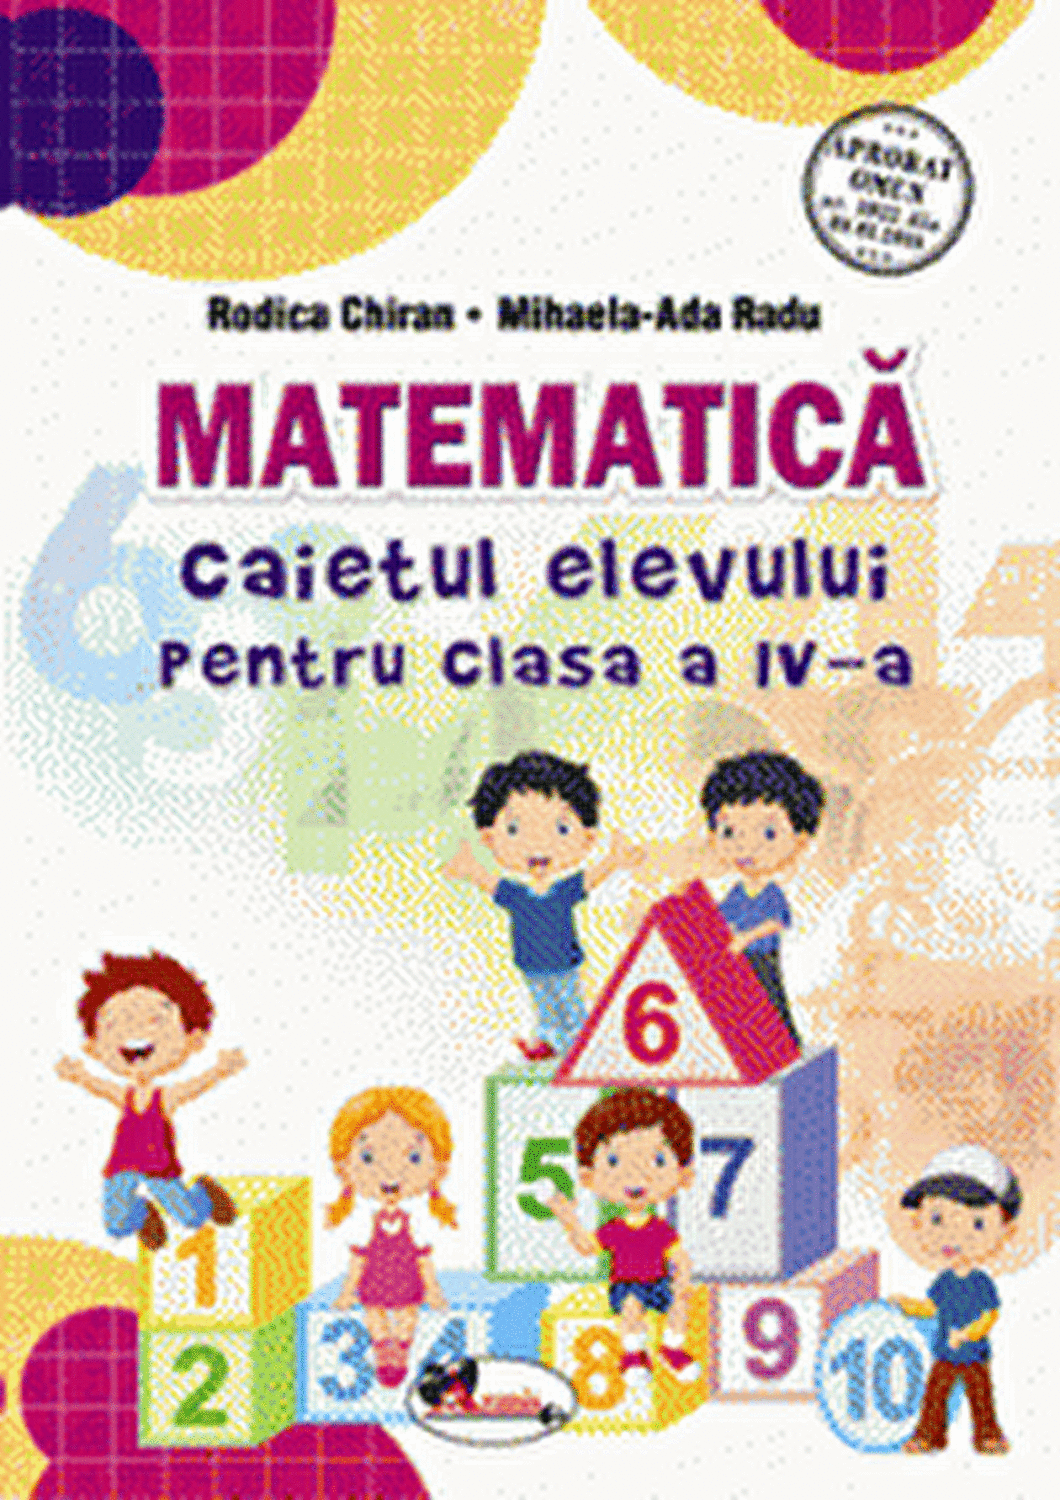 Matematica – Caietul elevului pentru clasa a IV-a | Rodica Chiran, Mihaela-Ada Radu Aramis Clasa a IV-a